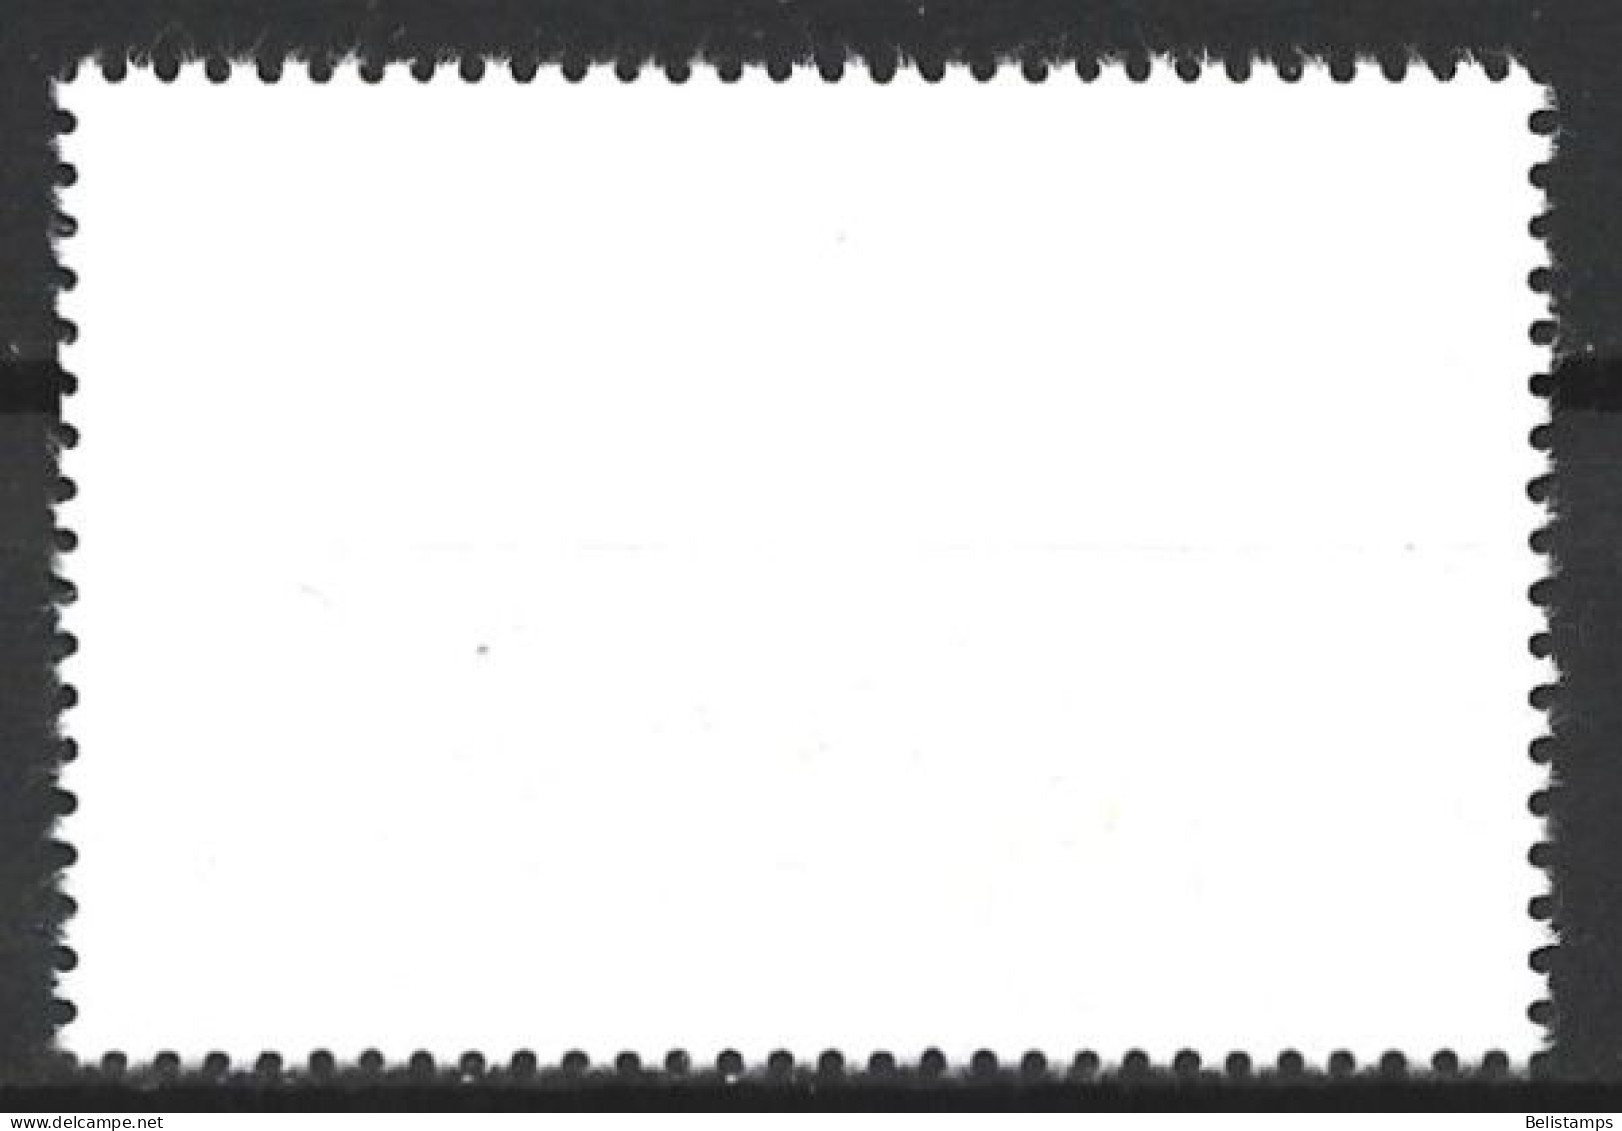 Cuba 1977. Scott #2163 (U) Intl. Airmail Service, 50th Anniv. - Used Stamps